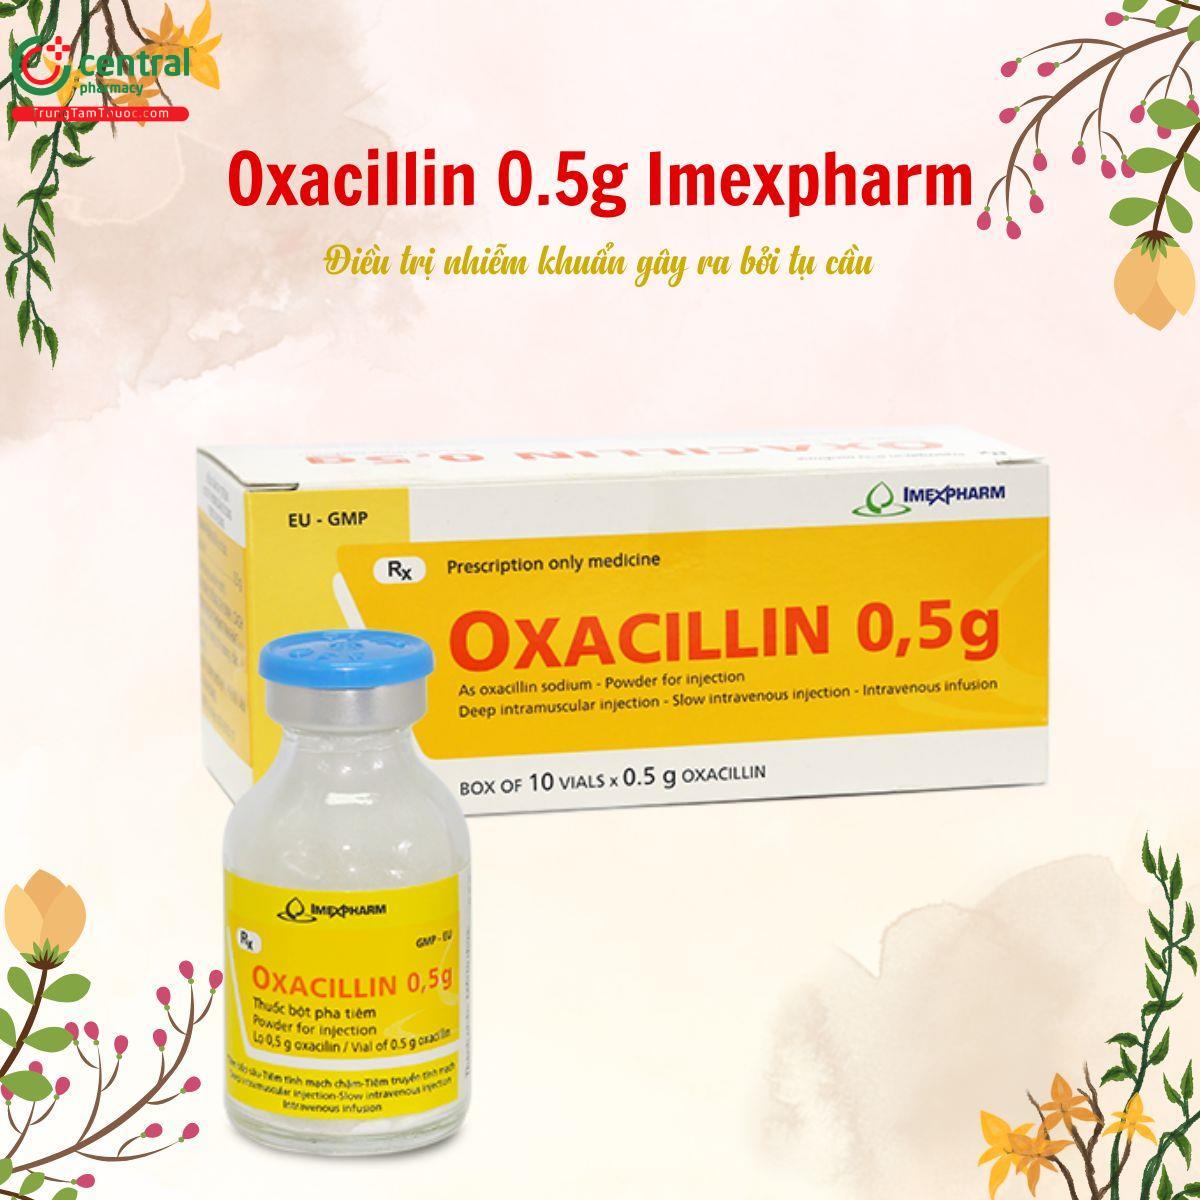 Thuốc Oxacillin 0.5g Imexpharm trị nhiễm khuẩn gây ra bởi tụ cầu